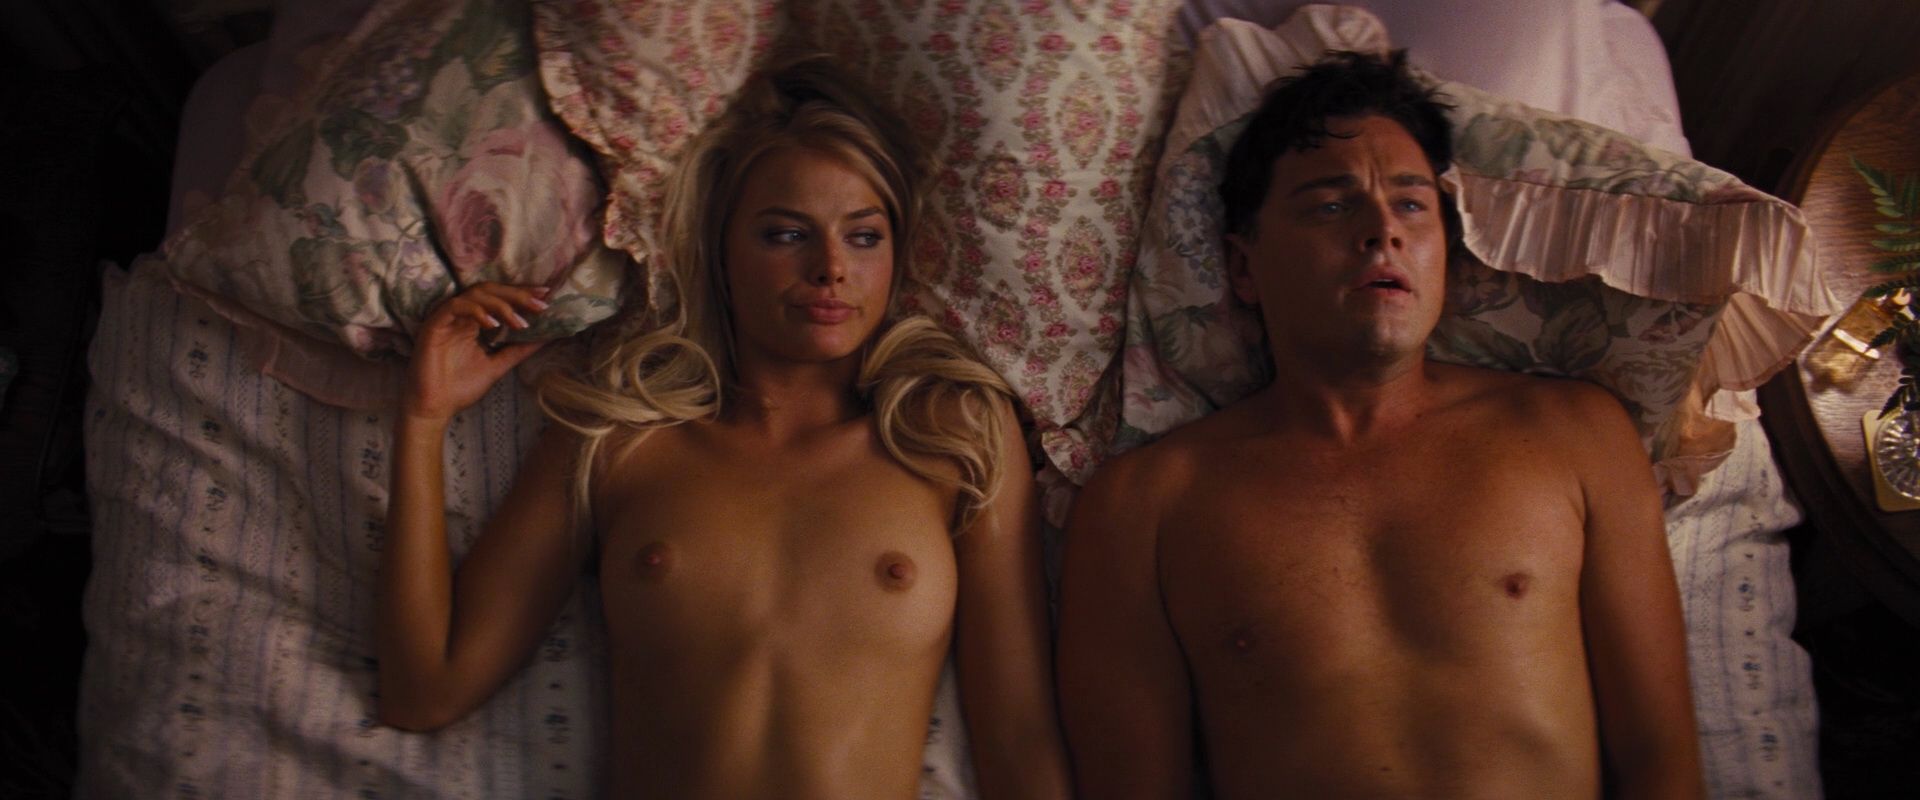 Margot Robbie nude boobs